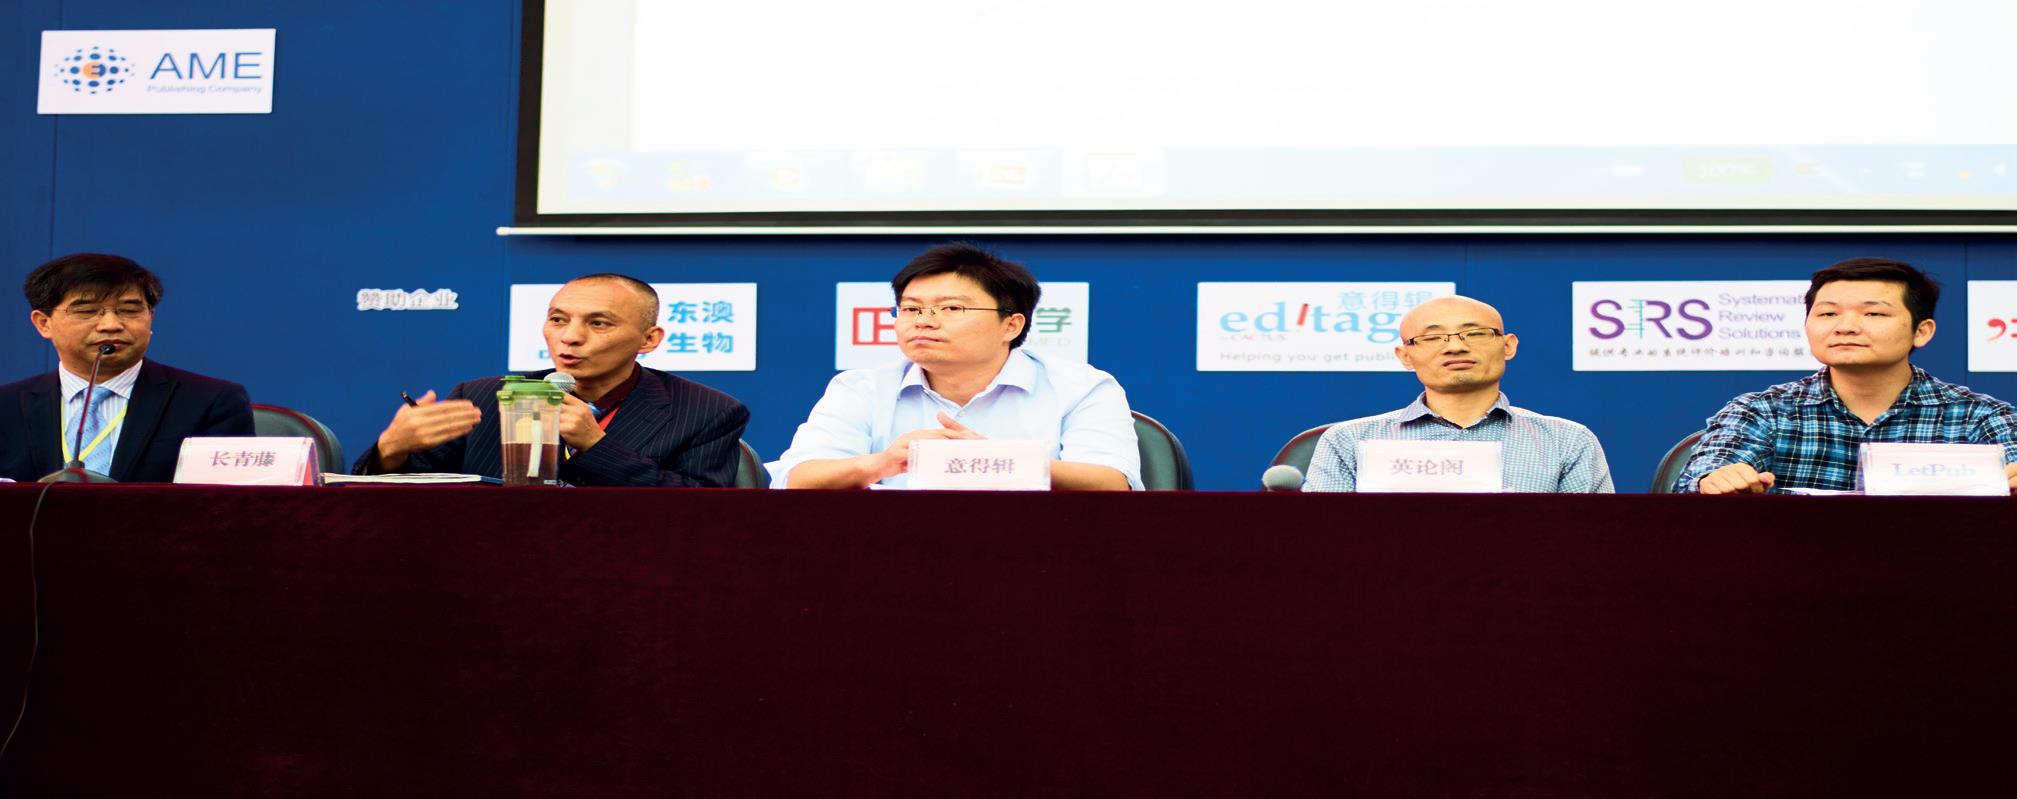 中国英文科技论文编辑联盟（The Alliance for Scientific Editing in China, ASEC）月2015 年10 月在中国武汉成立，目前由美捷登、长青藤、理文编辑、意得辑、英论阁和LetPub 6 家历史比较悠久并在国内颇具声誉的编辑公司组成。